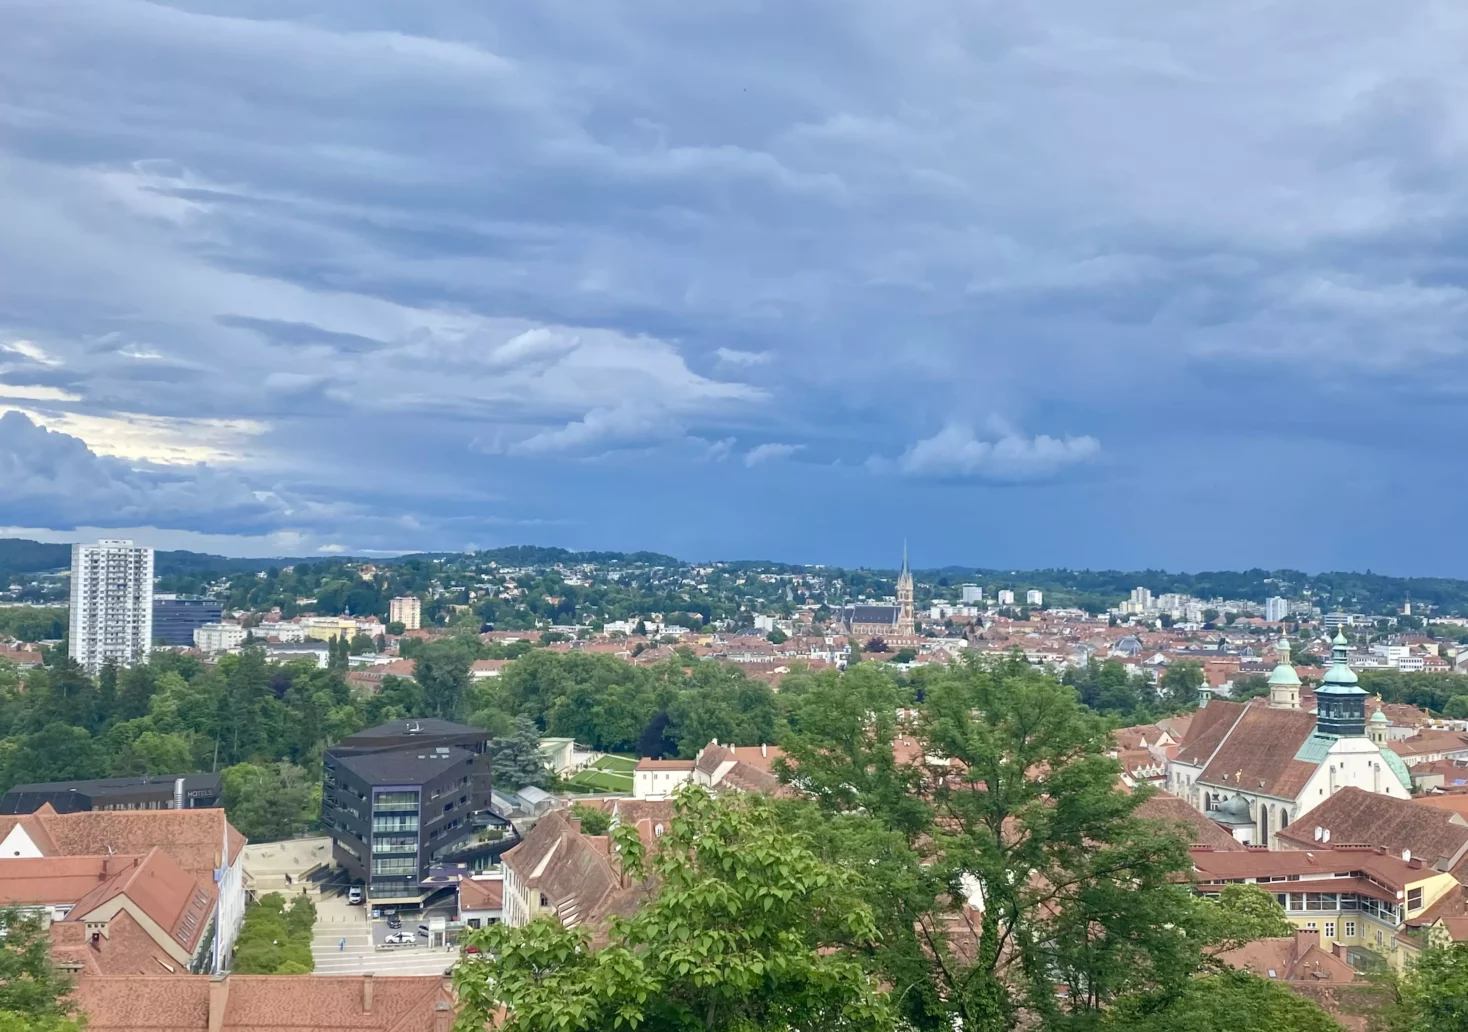 Foto auf 5min.at zeigt das Wetter in Graz